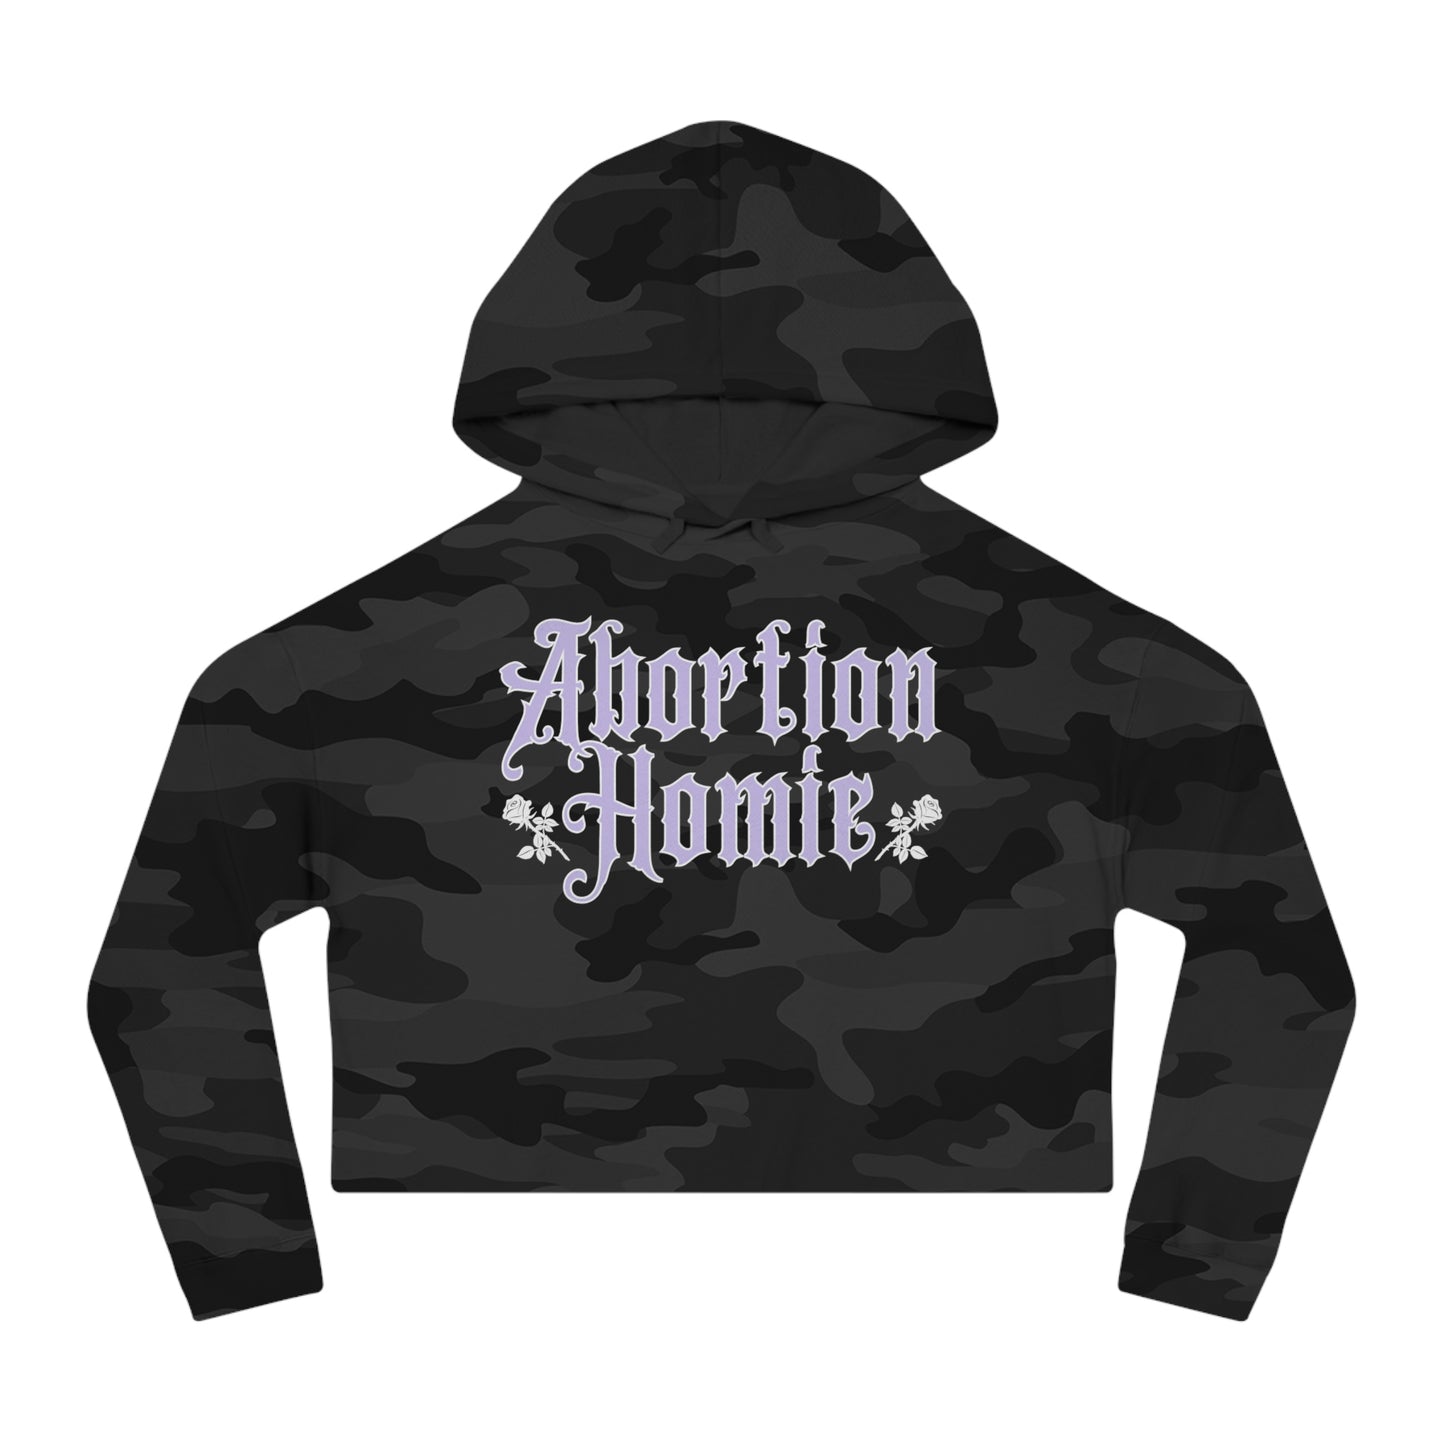 "Abortion Homie" Cropped Hooded Sweatshirt